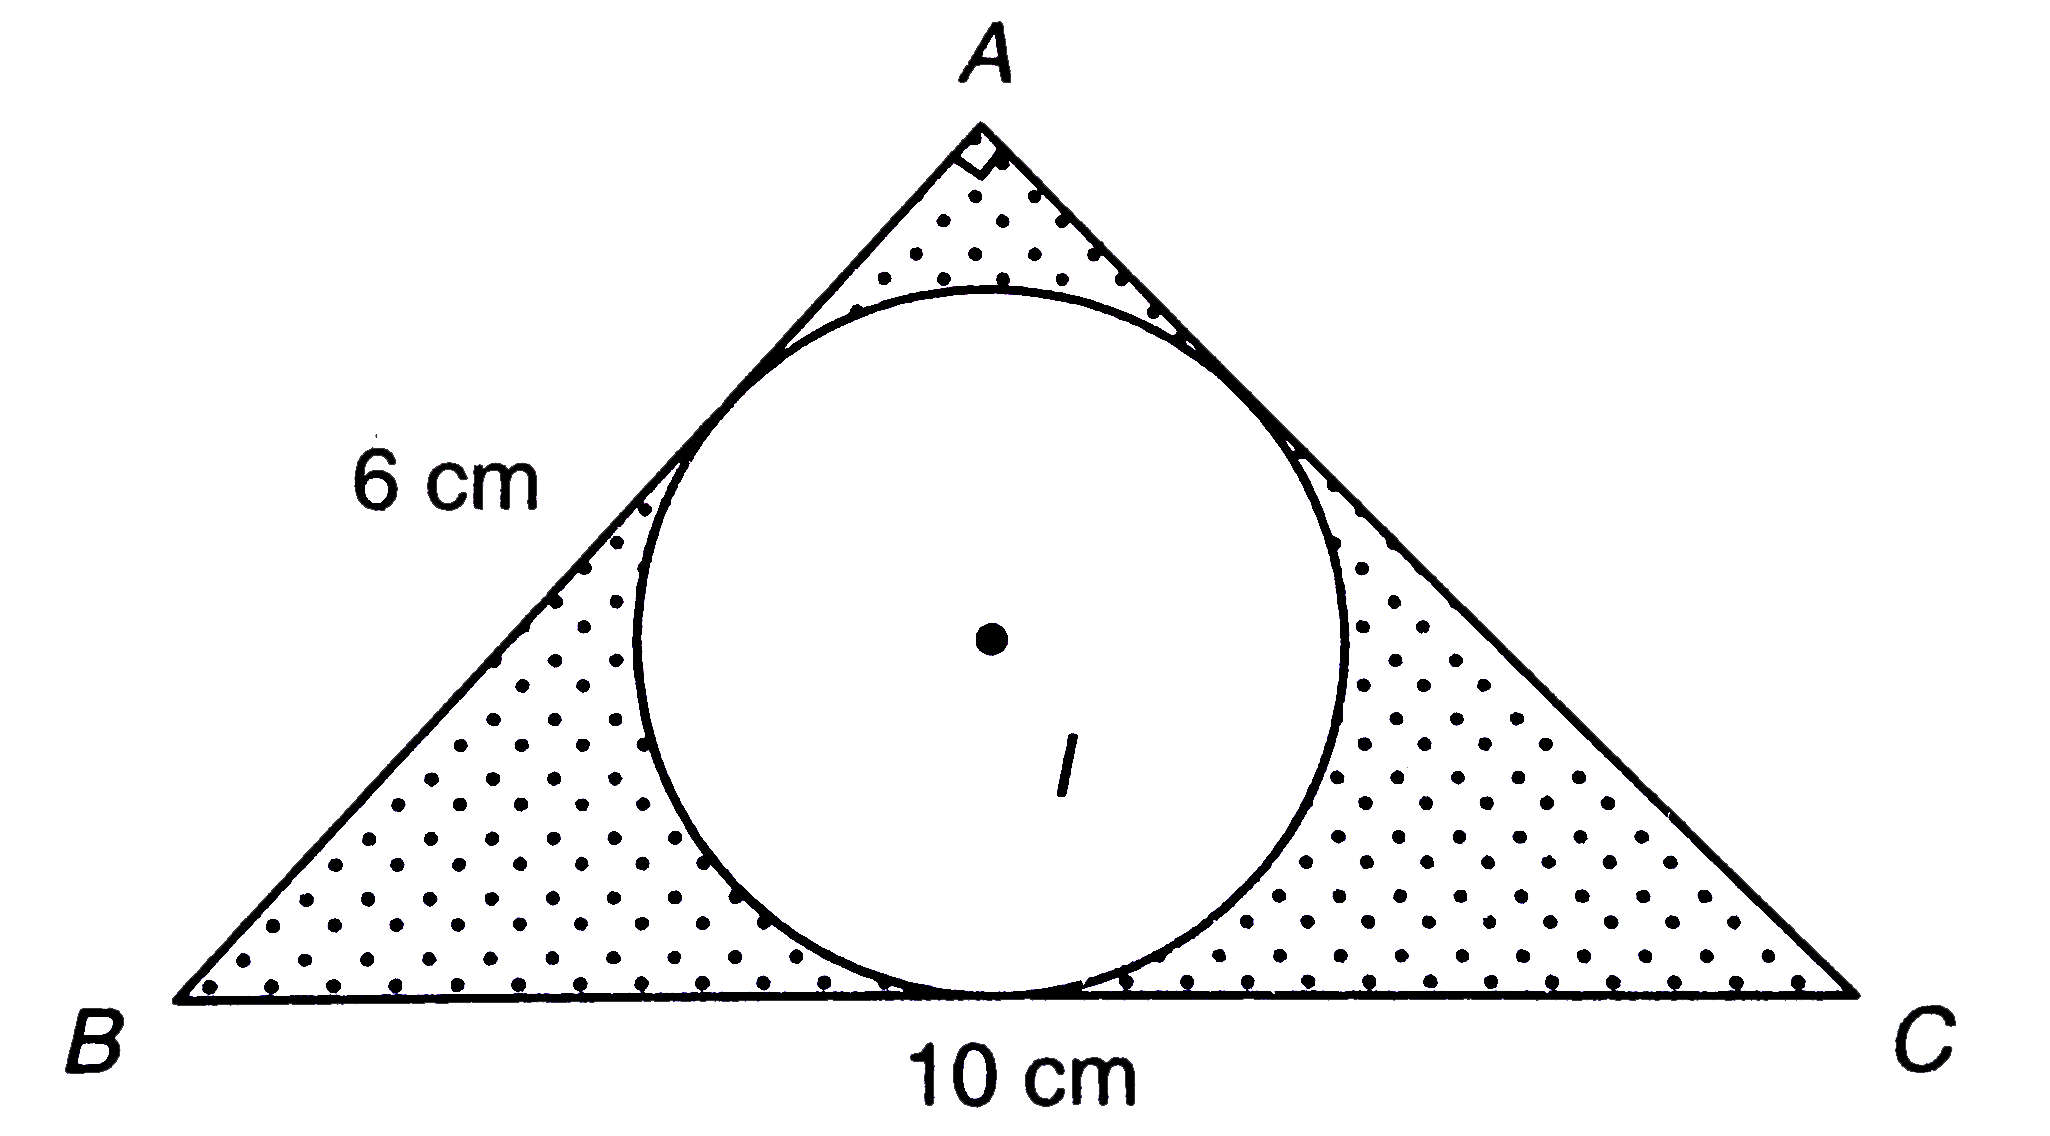 संलग्न चित्र में, त्रिभुज ABC शीर्ष बिन्दु A पर एक समकोण त्रिभुज है | जहाँ AB = 6 सेमी., BC = 10 सेमी. तथा I, DeltaABC के अन्त:वृत्त का केन्द्र है, तो छायांकित भाग का क्षेत्रफल ज्ञात कीजिए |